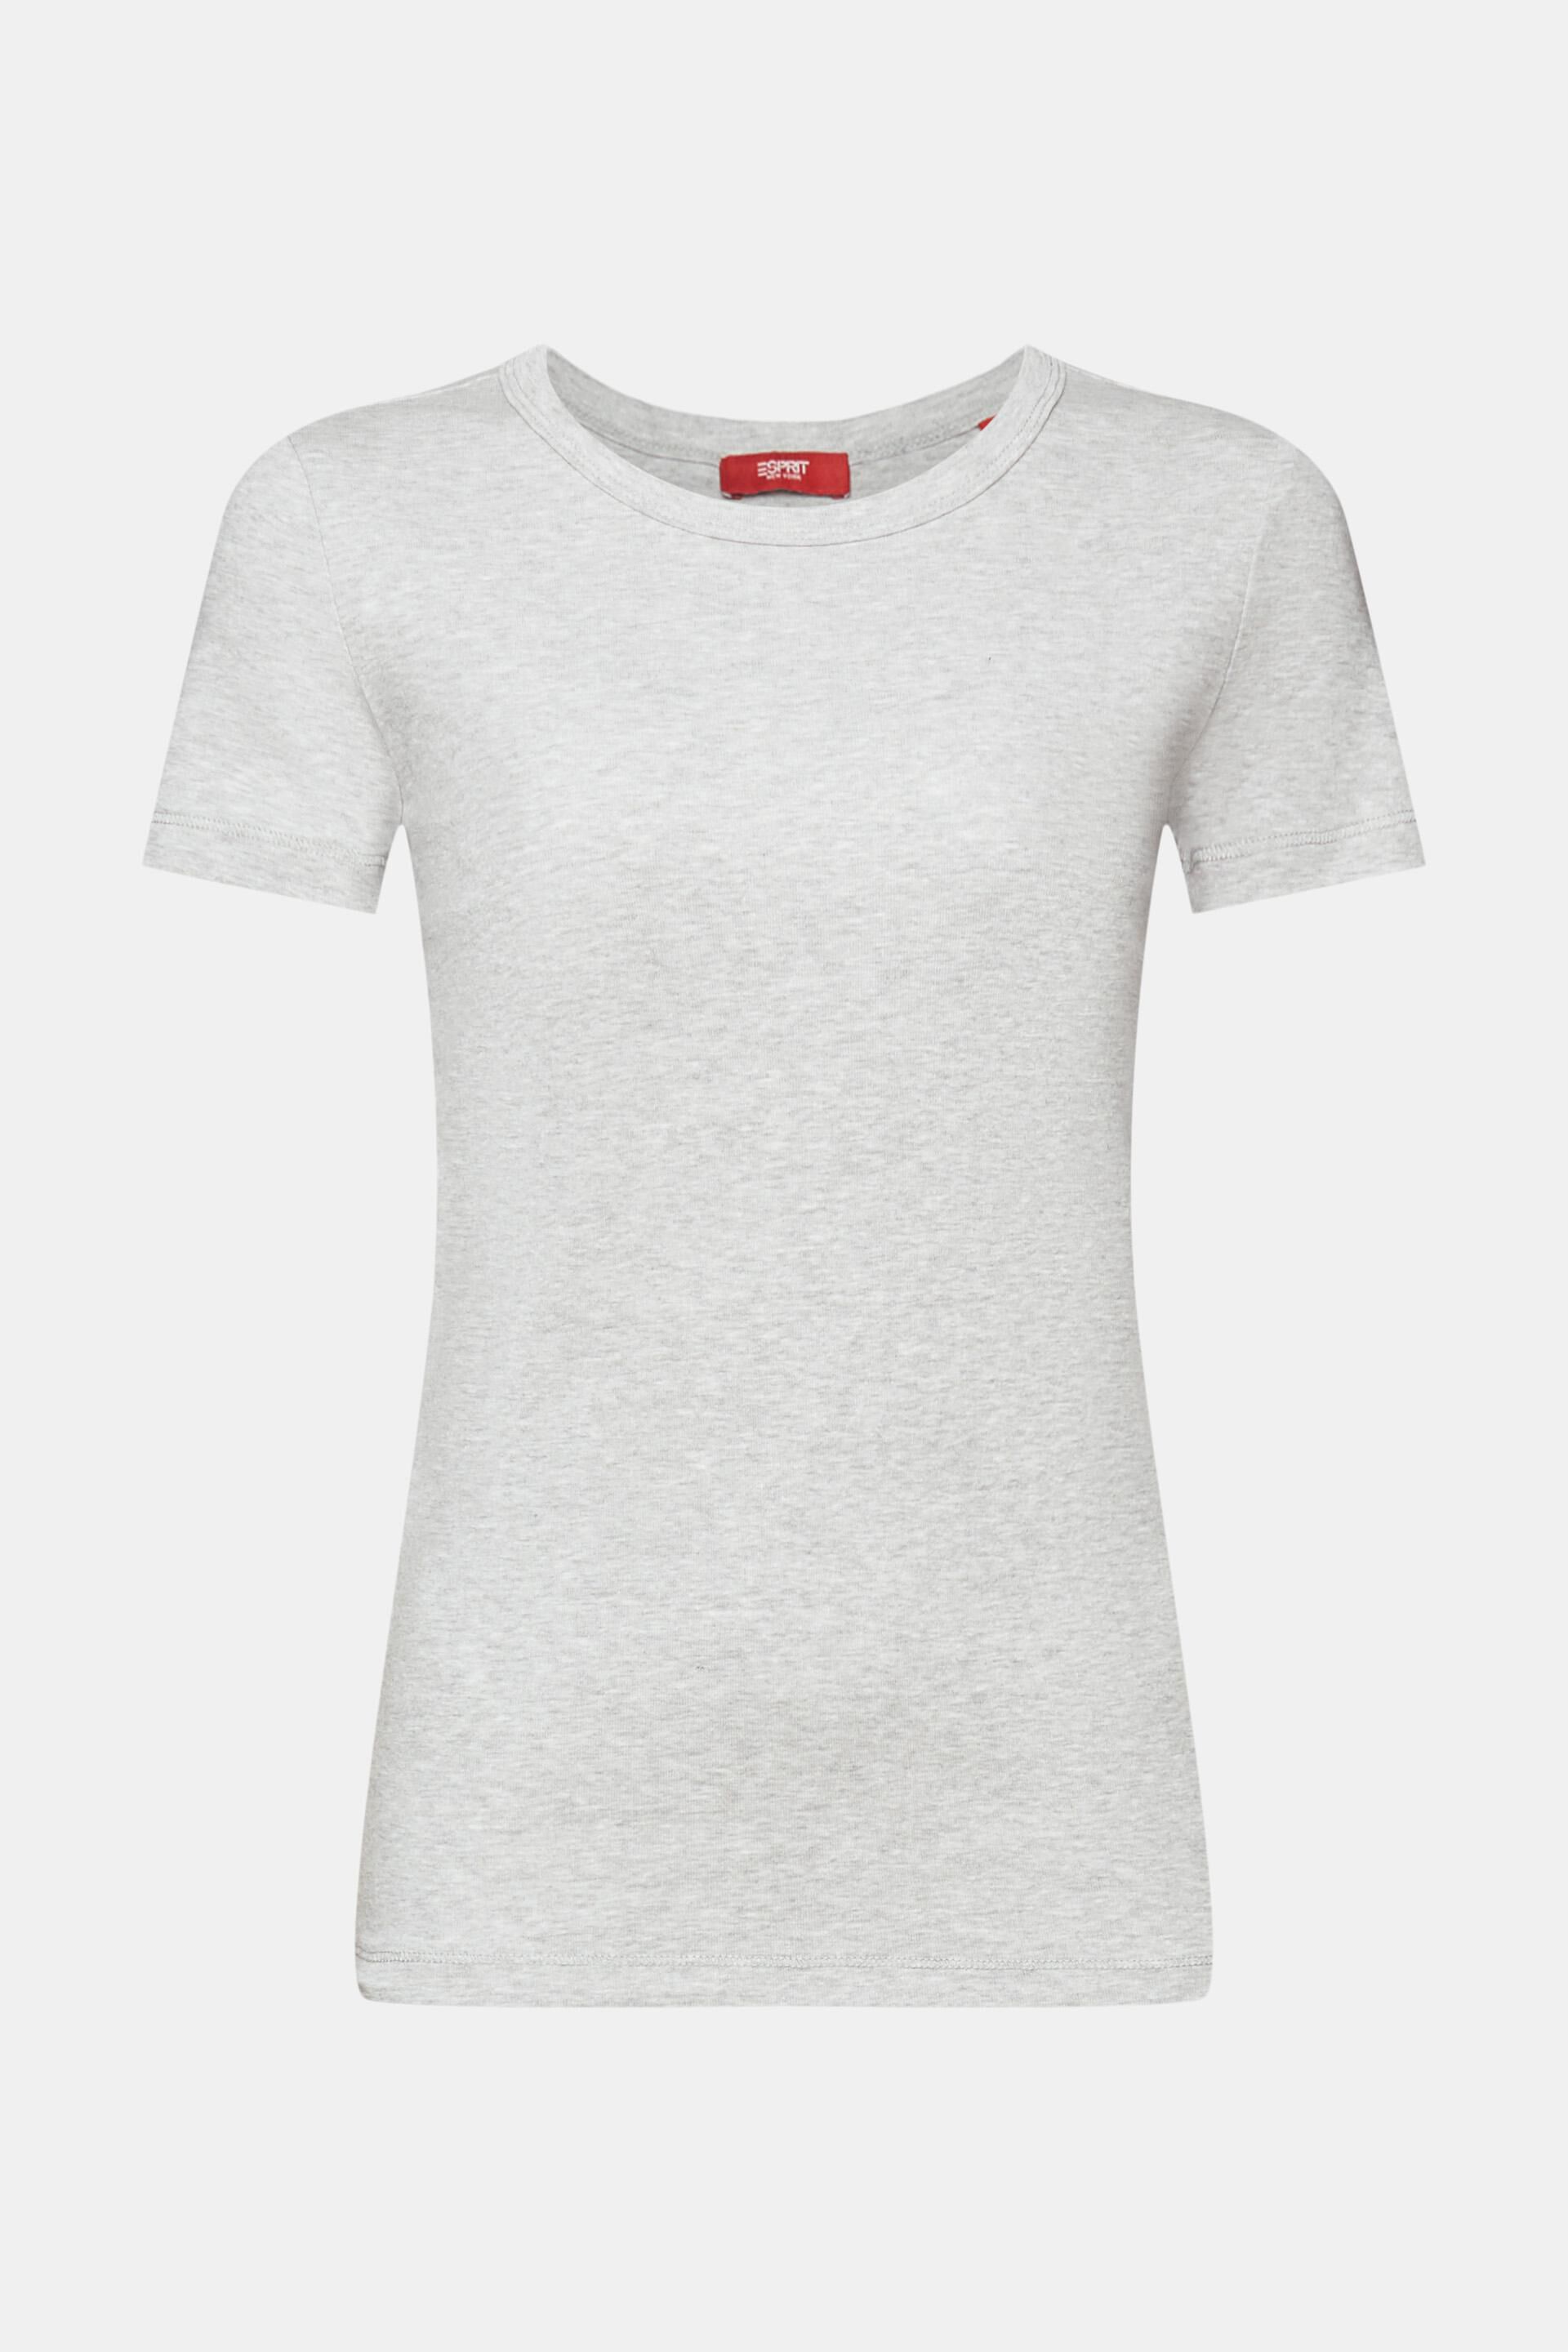 Esprit Damen T-Shirt mit Rundhalsausschnitt